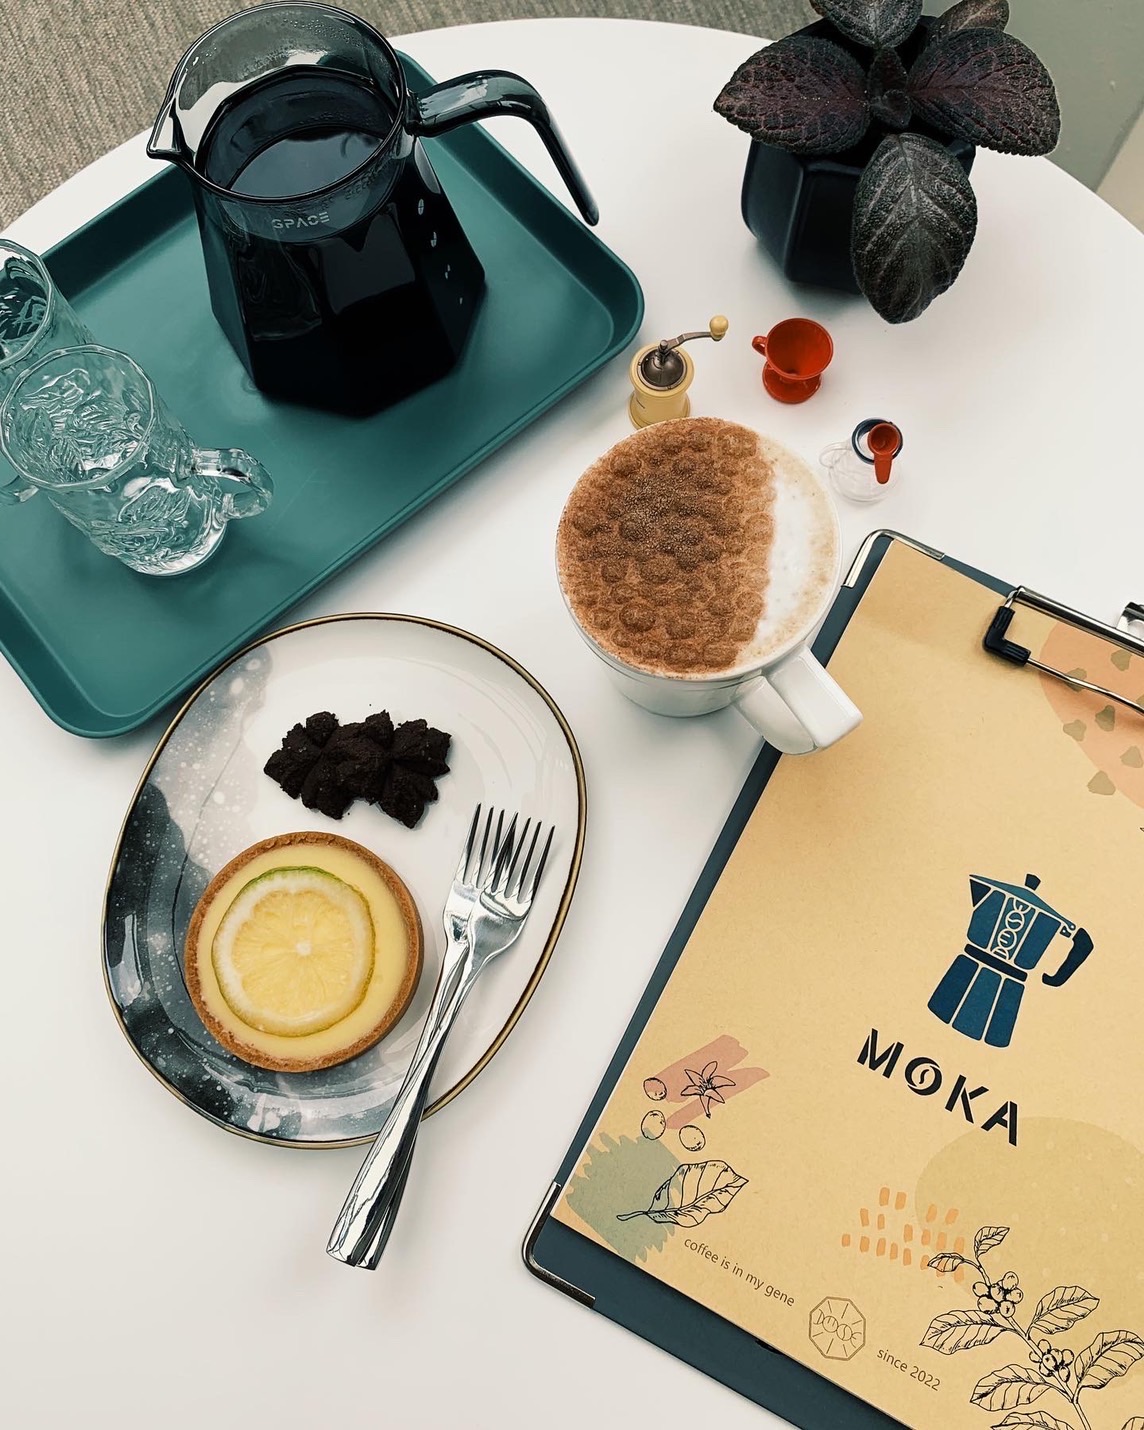 MOKA CAFE 基因咖啡